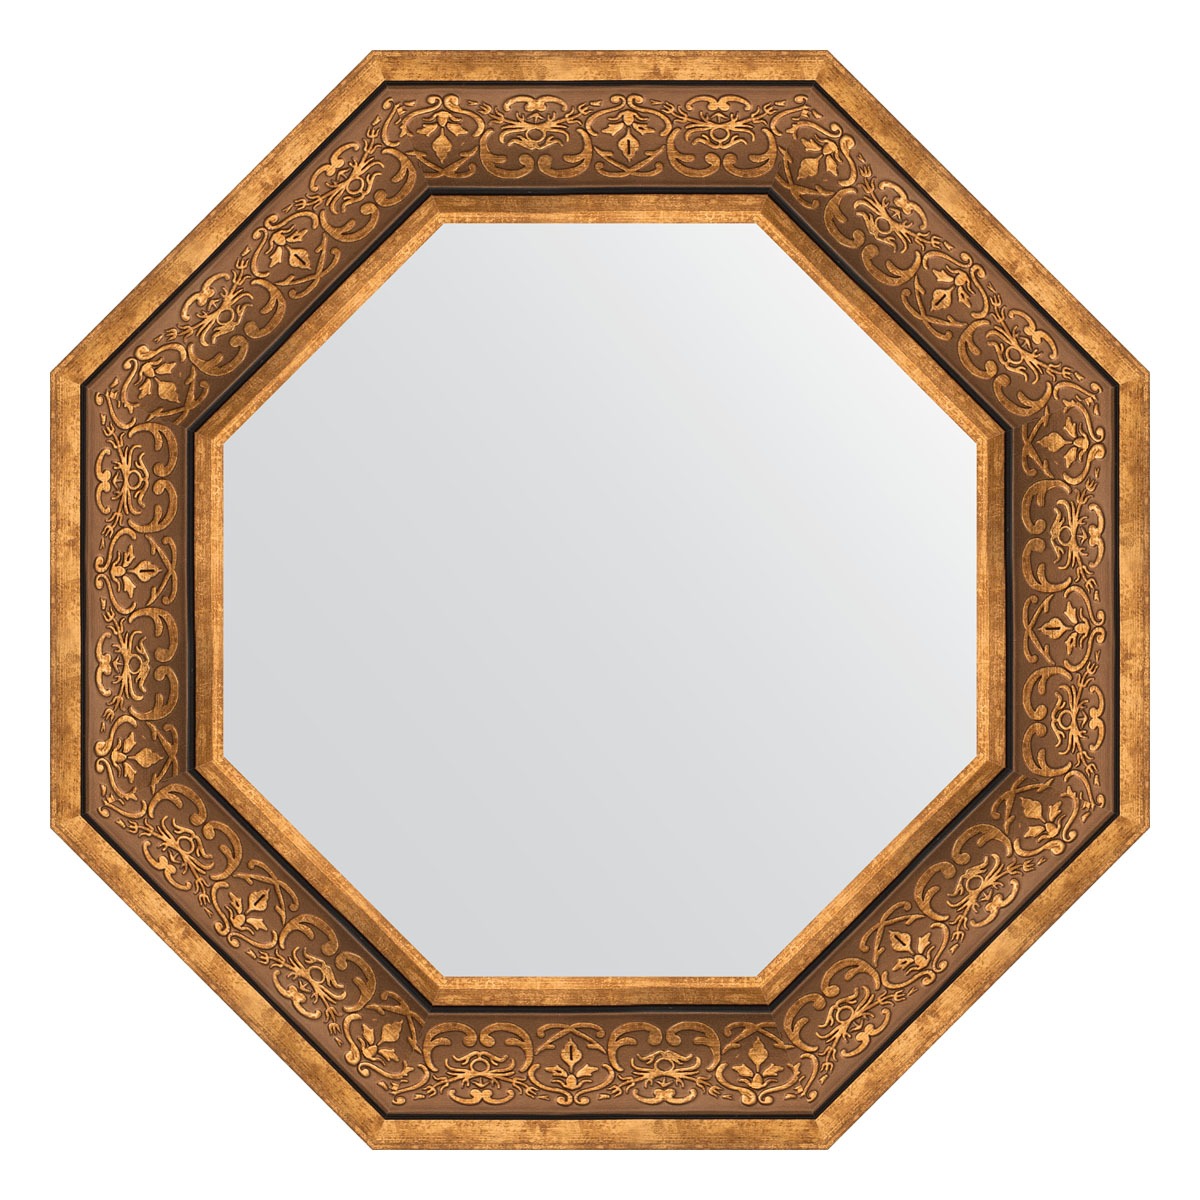 Зеркало в багетной раме Evoform вензель бронзовый 101 мм 64x64 см